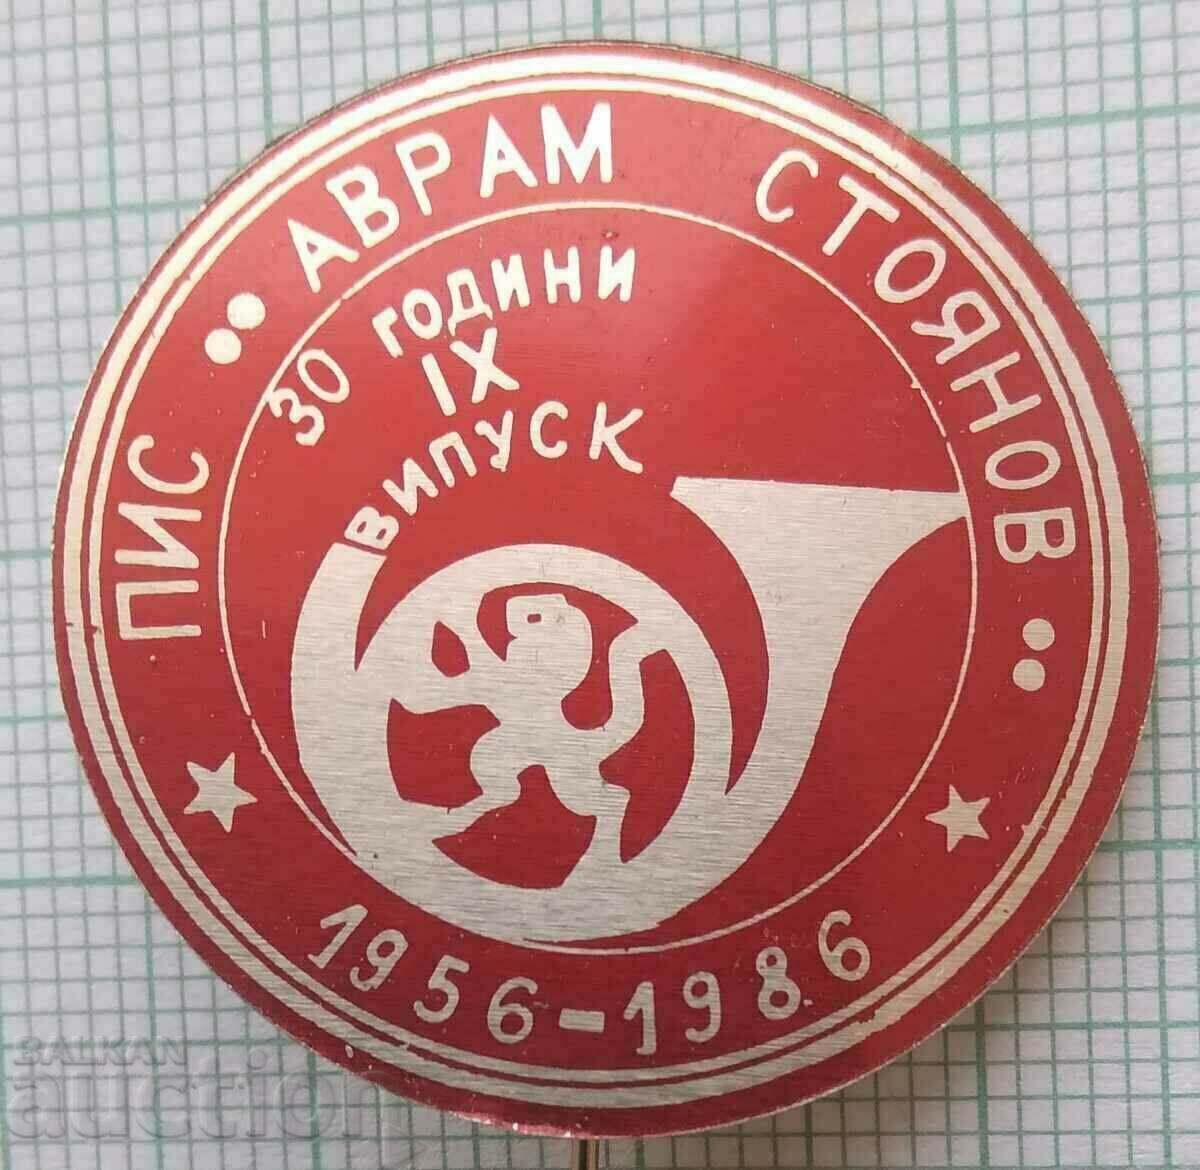 14467 Ημι-ανώτερο Ινστιτούτο Κοιν. Avram Stoyanov - 30 χρόνια PIS